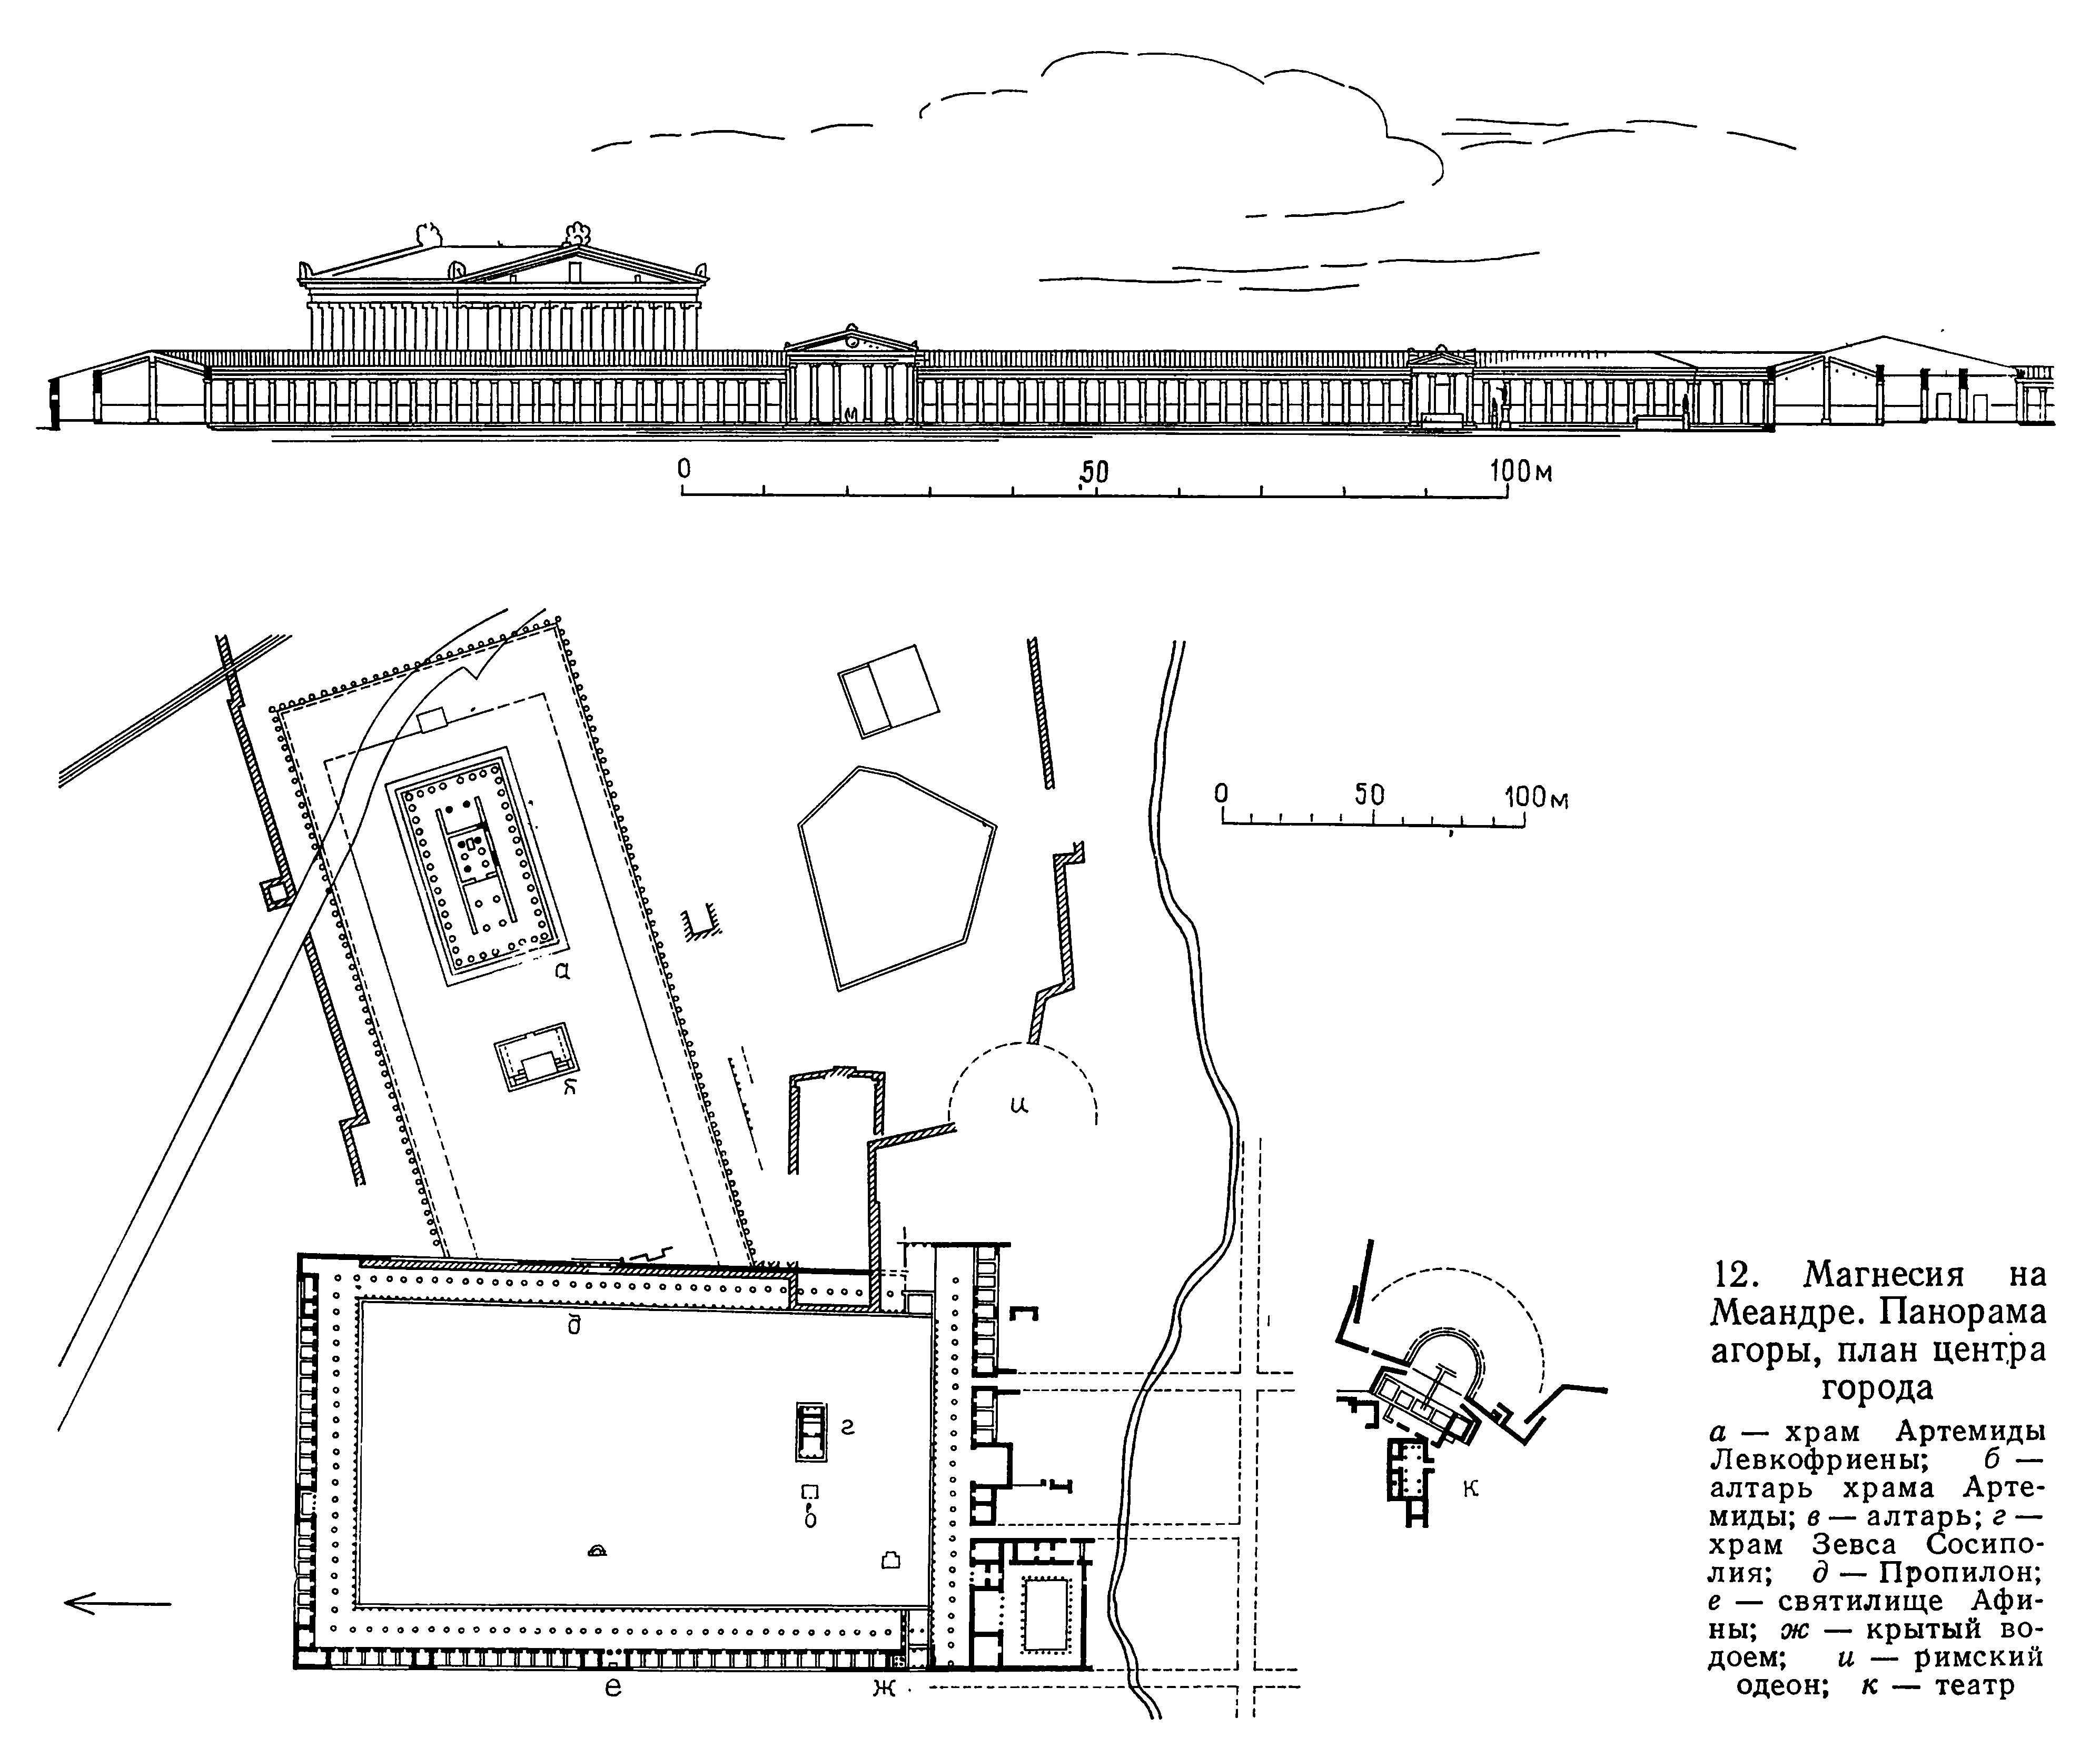 Магнесия на Меандре. Панорама агоры, план центра города